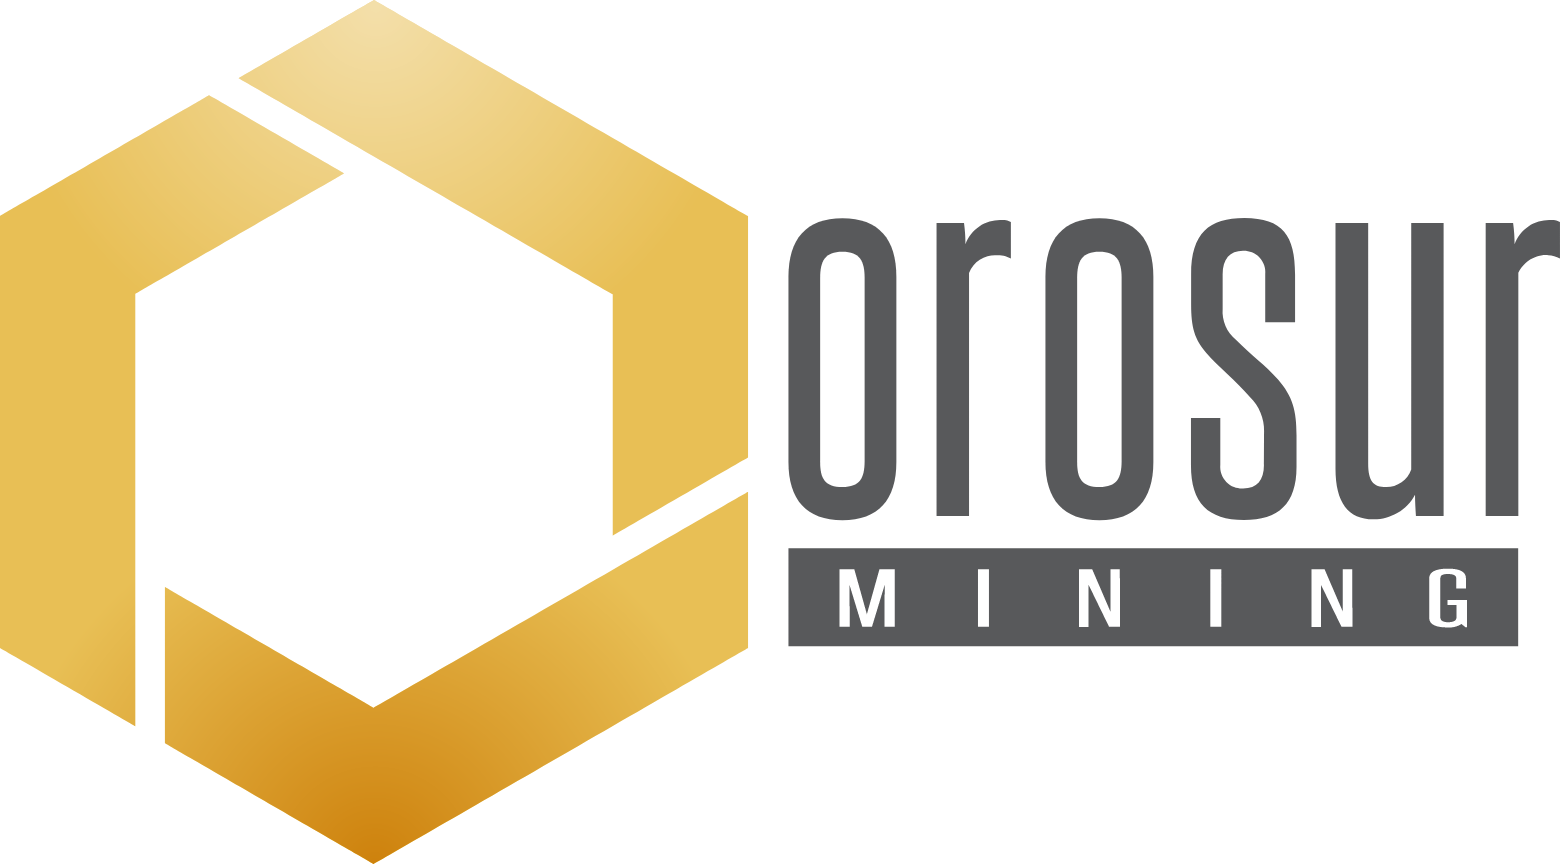 Orosur Mining logo large (transparent PNG)